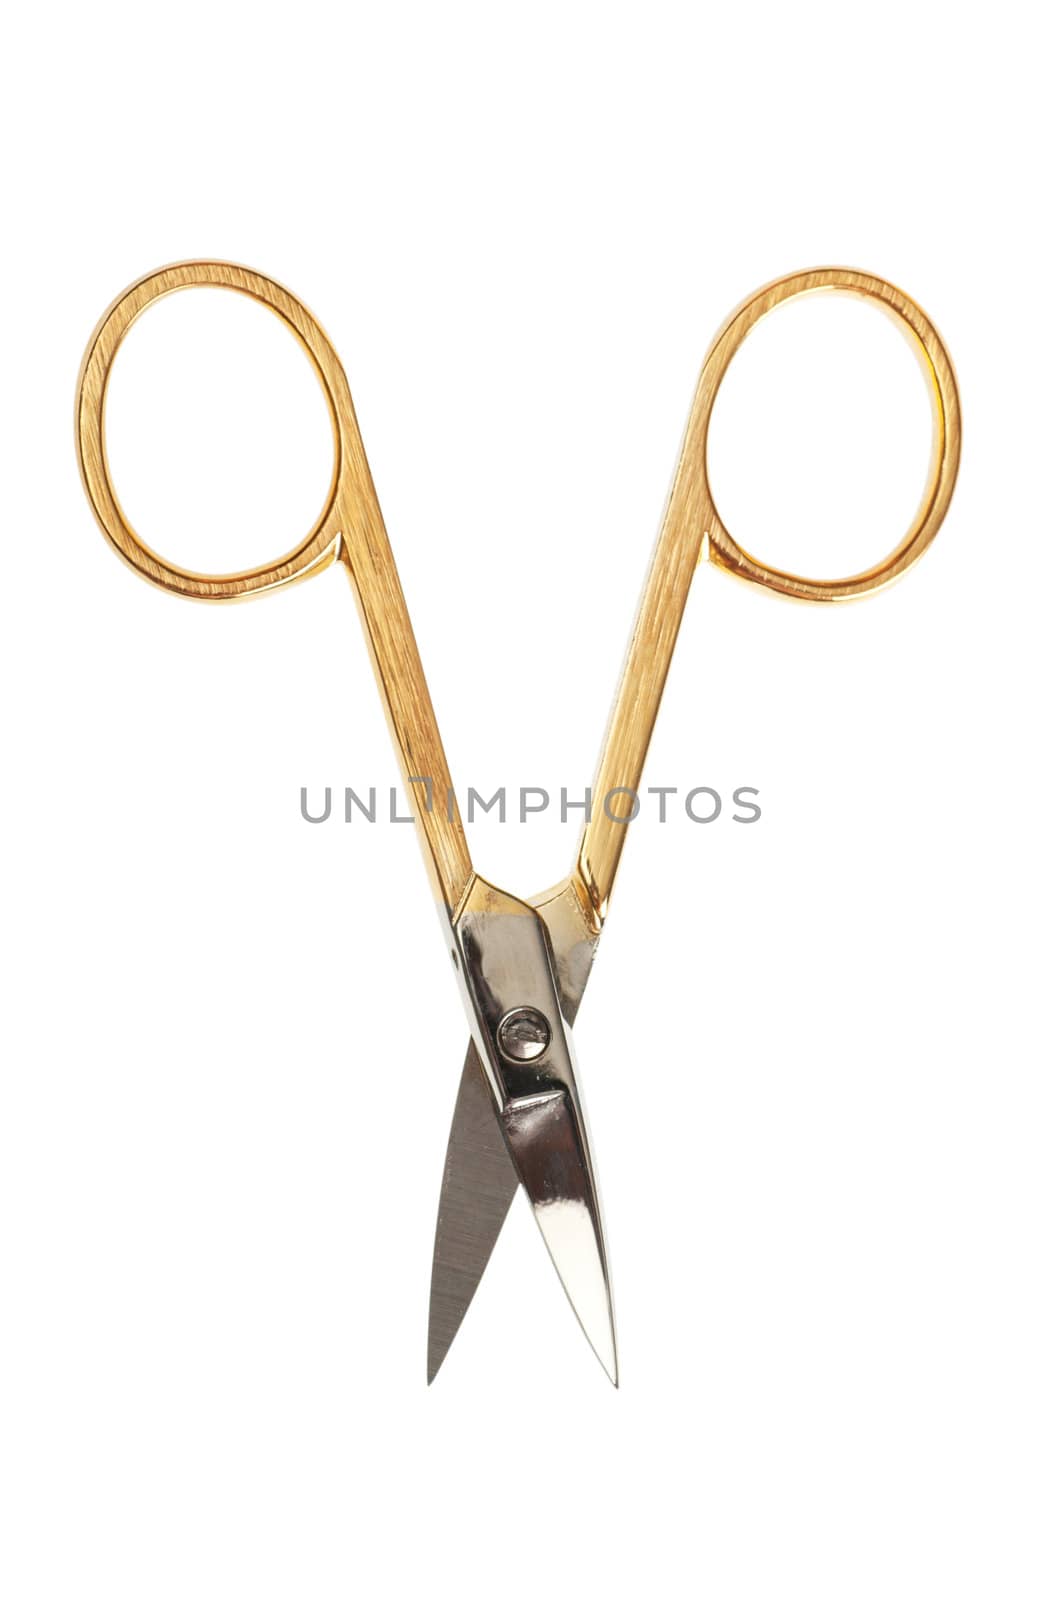 Scissors by AGorohov